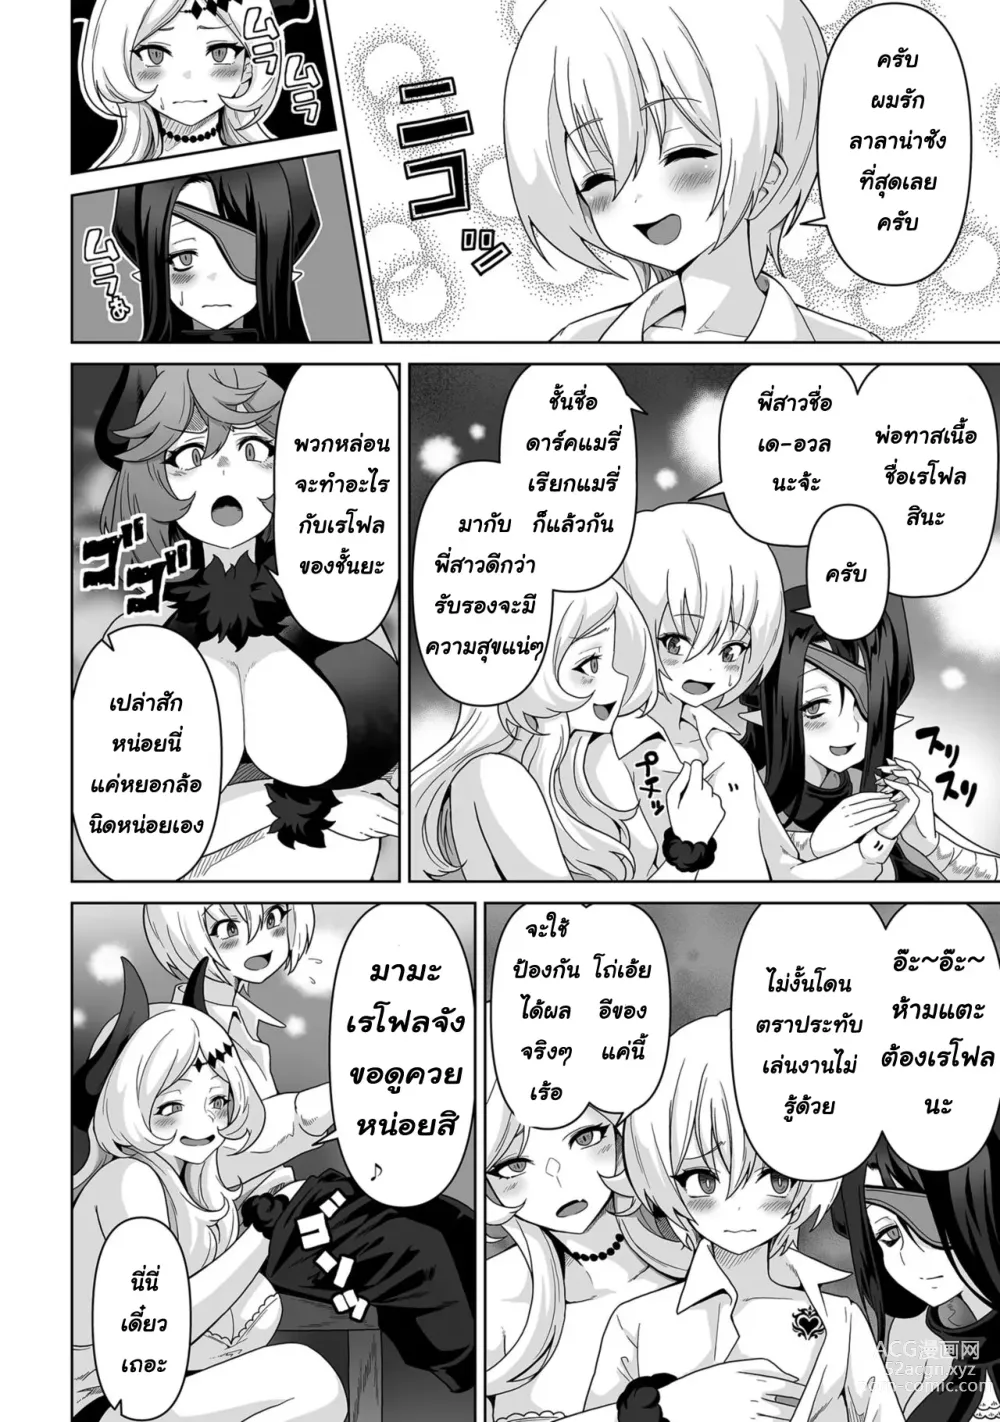 Page 5 of manga Sakyubasu kingudamu dai isekai kara kita shounen 2